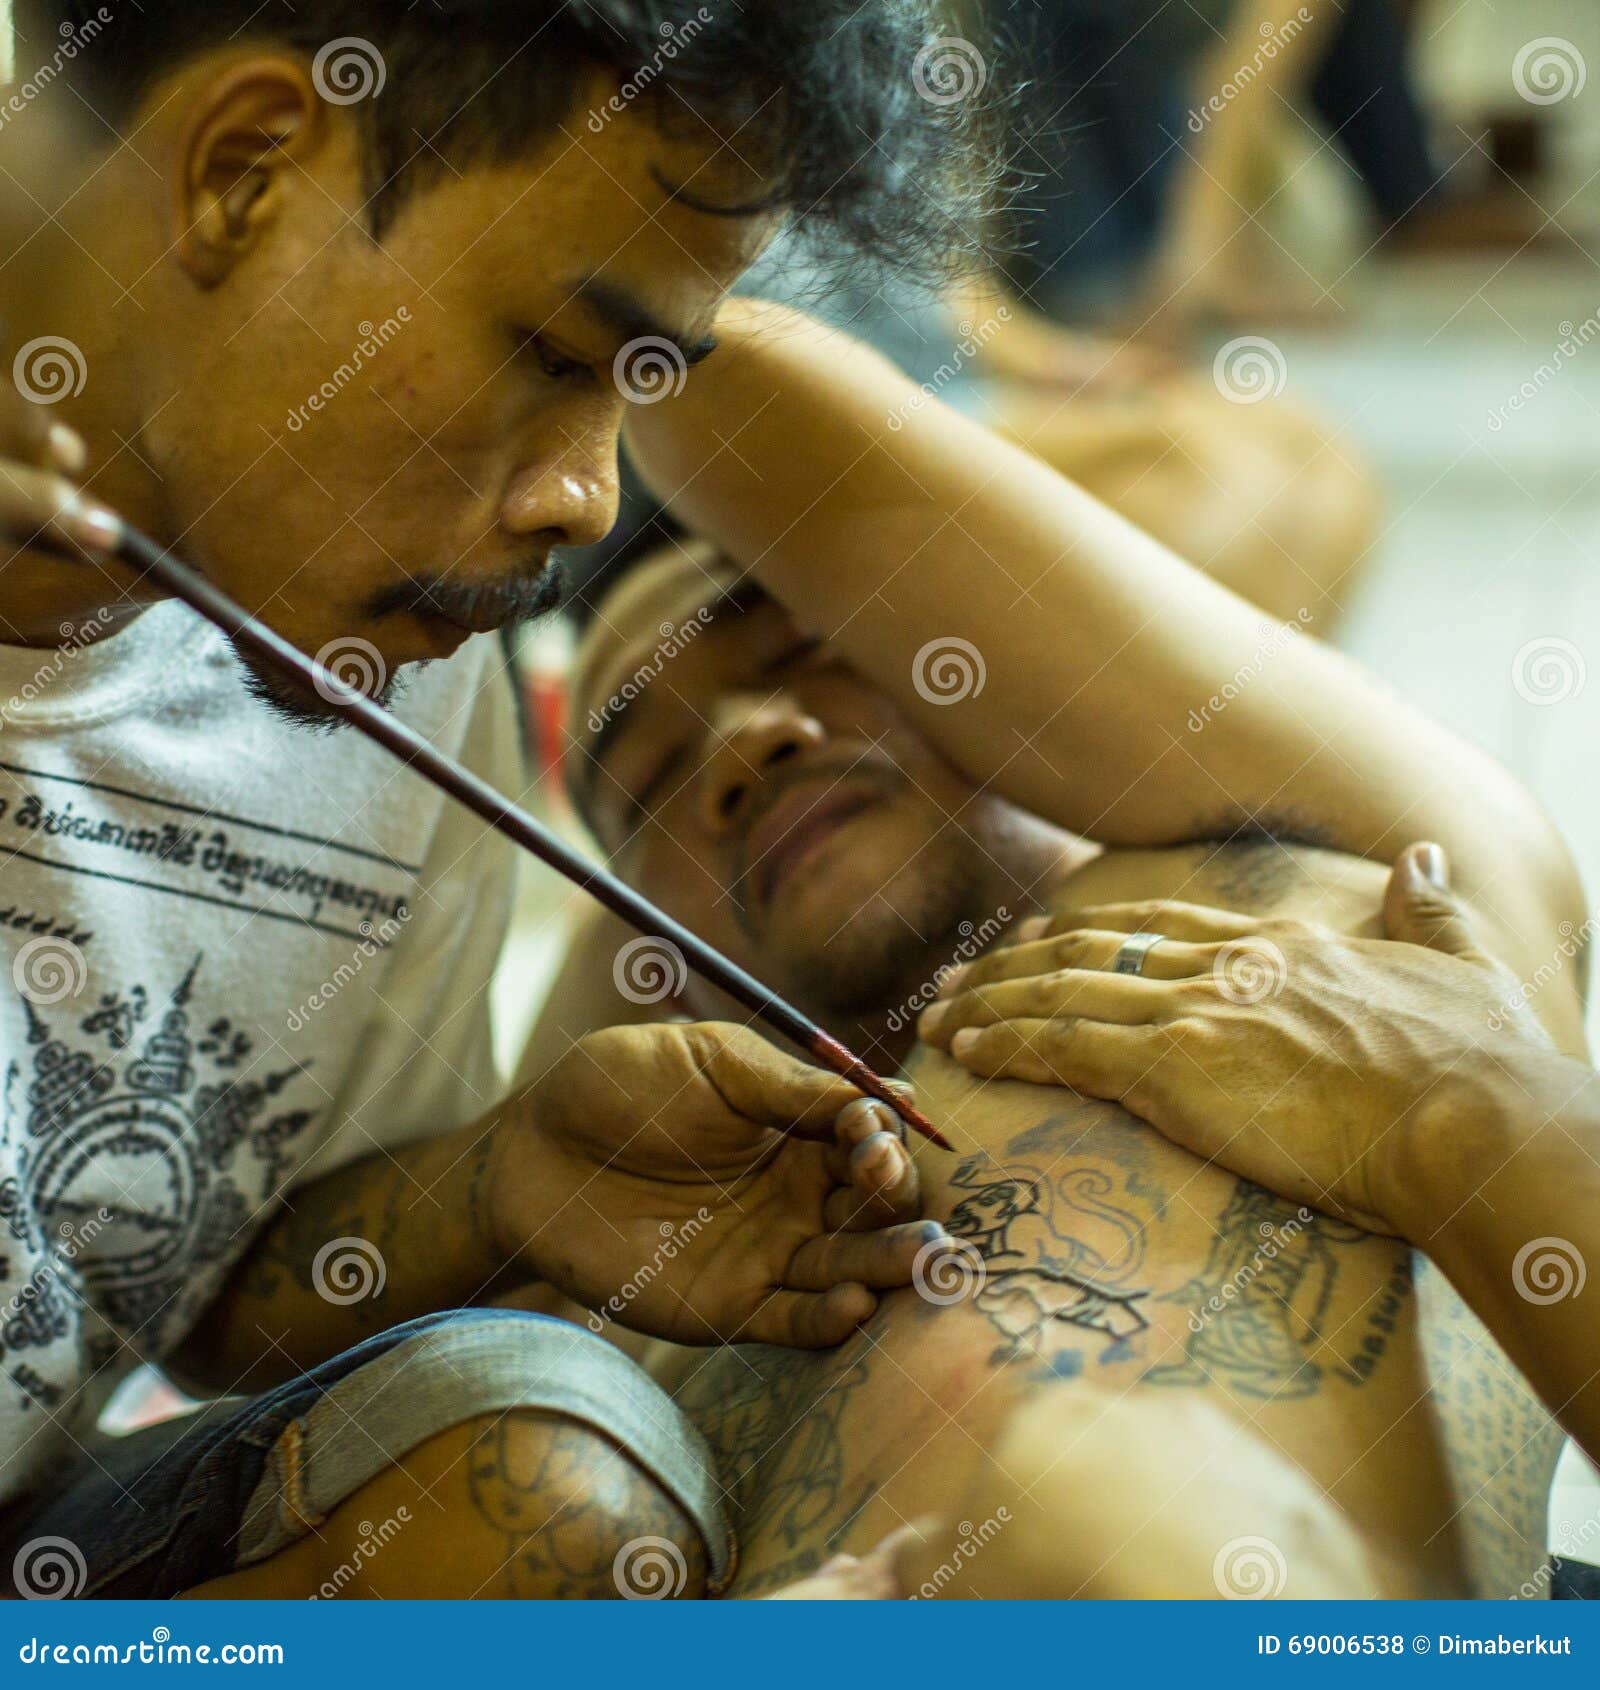 Sak Yant Chiang Mai Artists | Panumart Tattoo